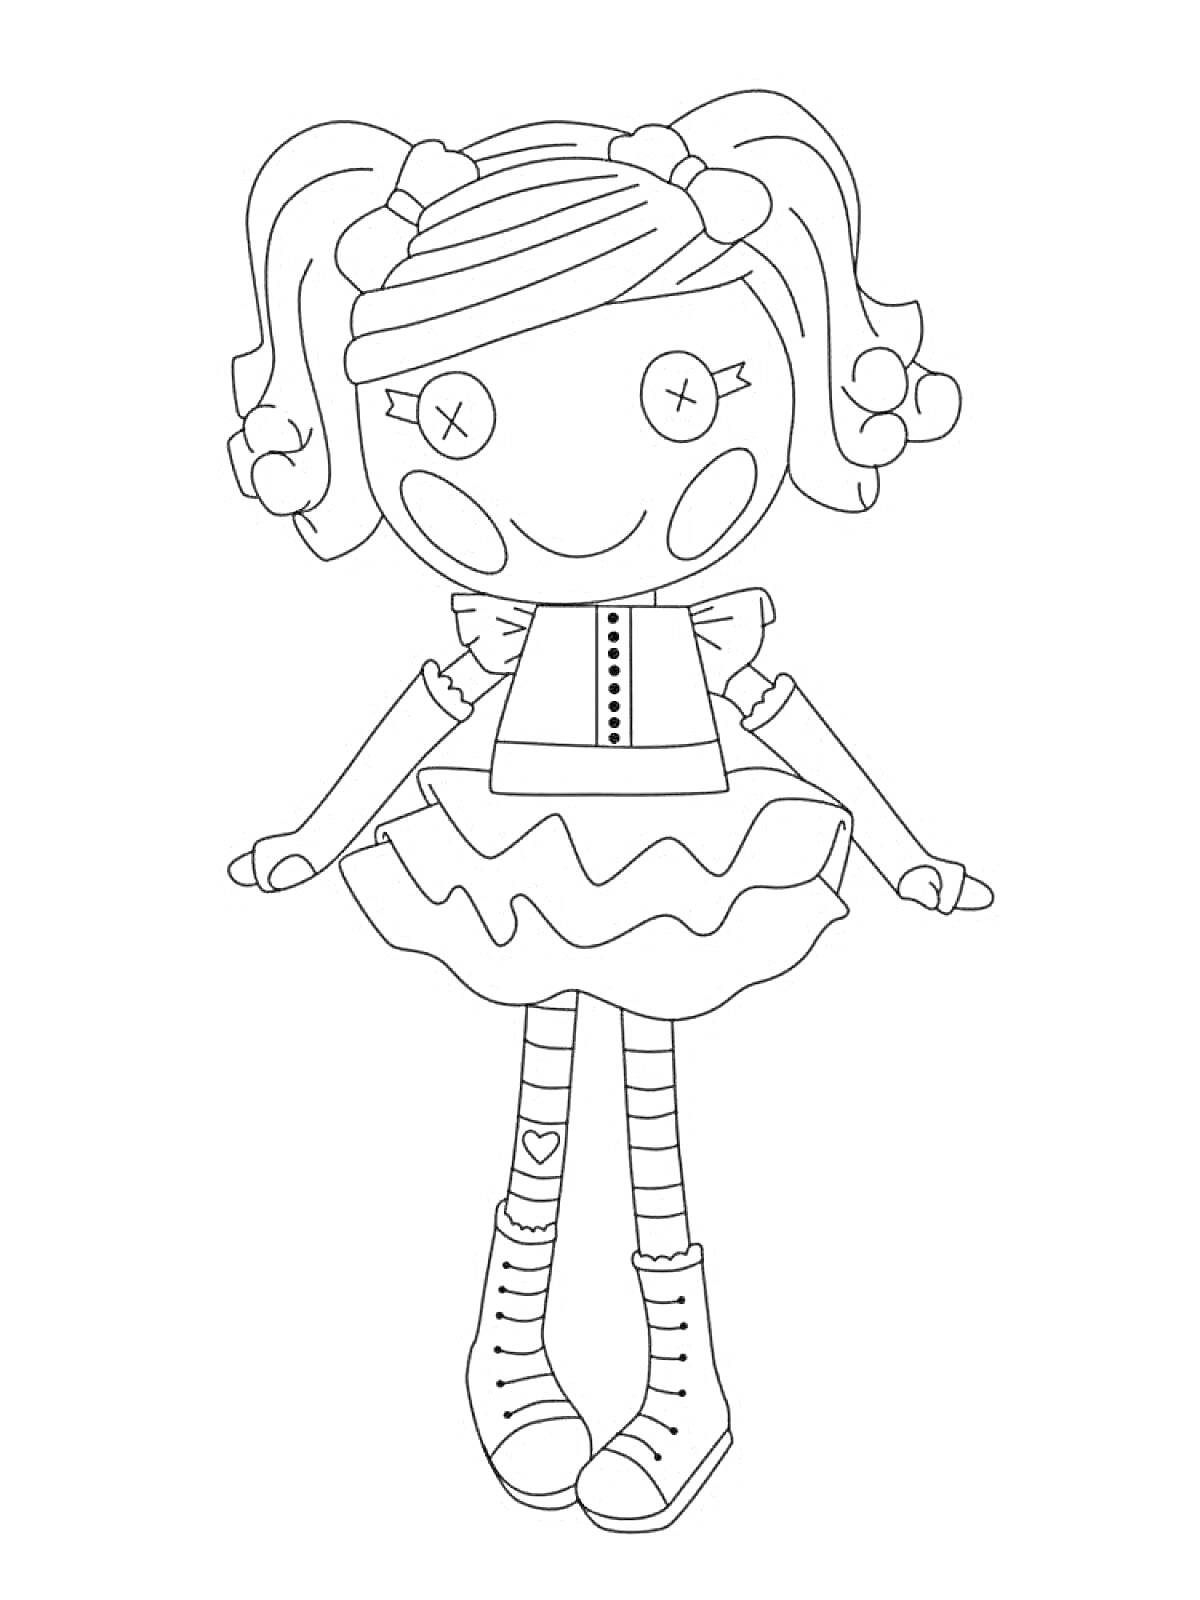 Раскраска Кукла с двумя хвостиками, круглые глаза с крестиками, нарядное платье с оборками, полосатые чулки, ботинки на шнуровке